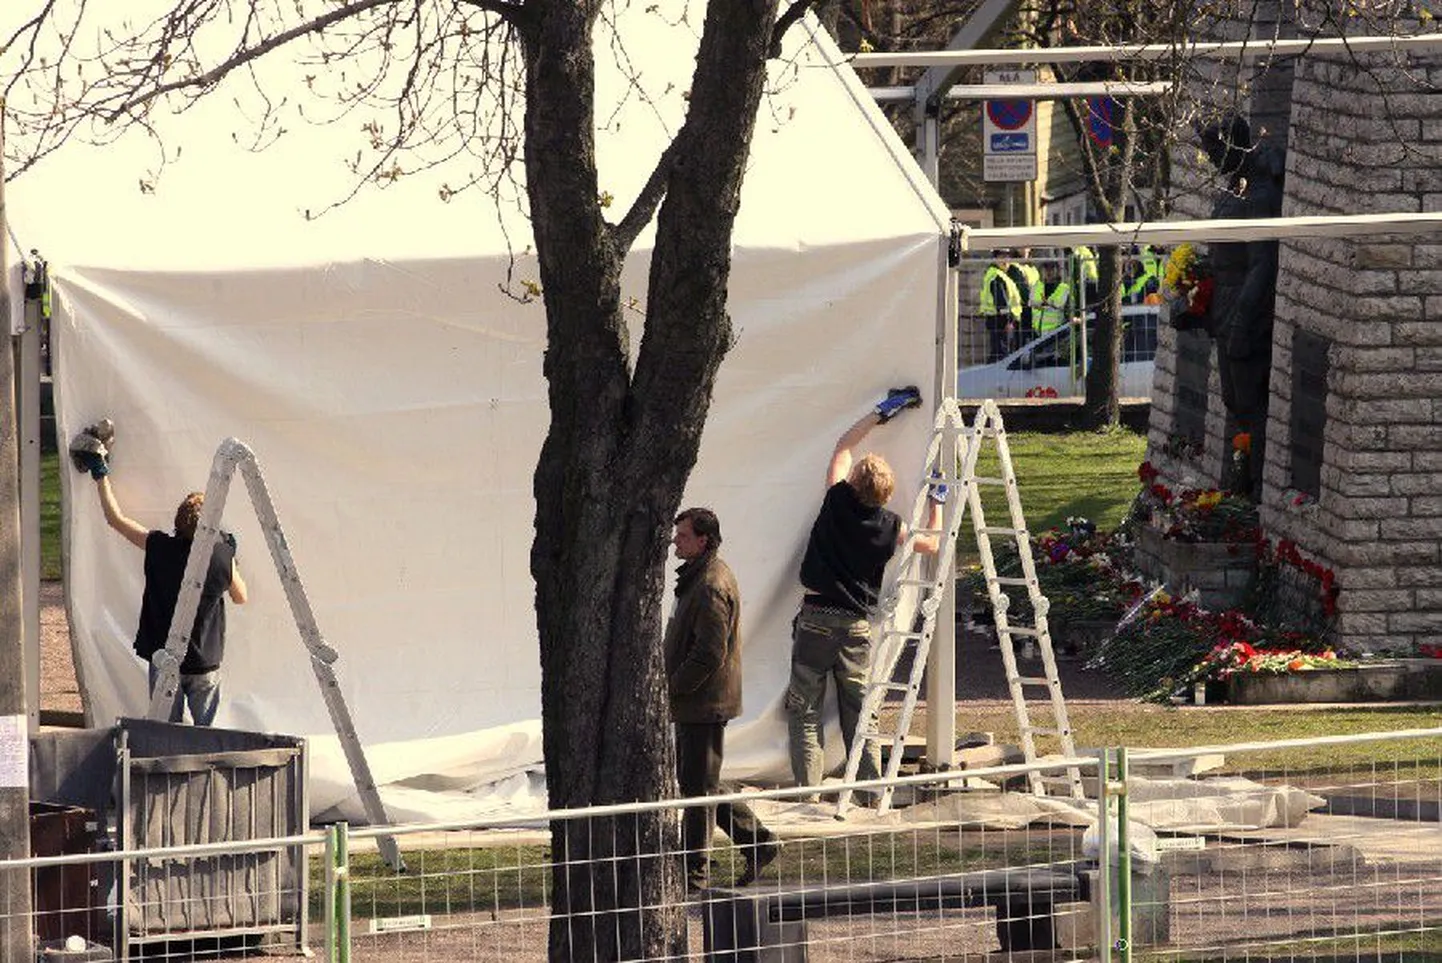 26 апреля днем на Тынисмяги установили палатку, которая закрыла памятник.